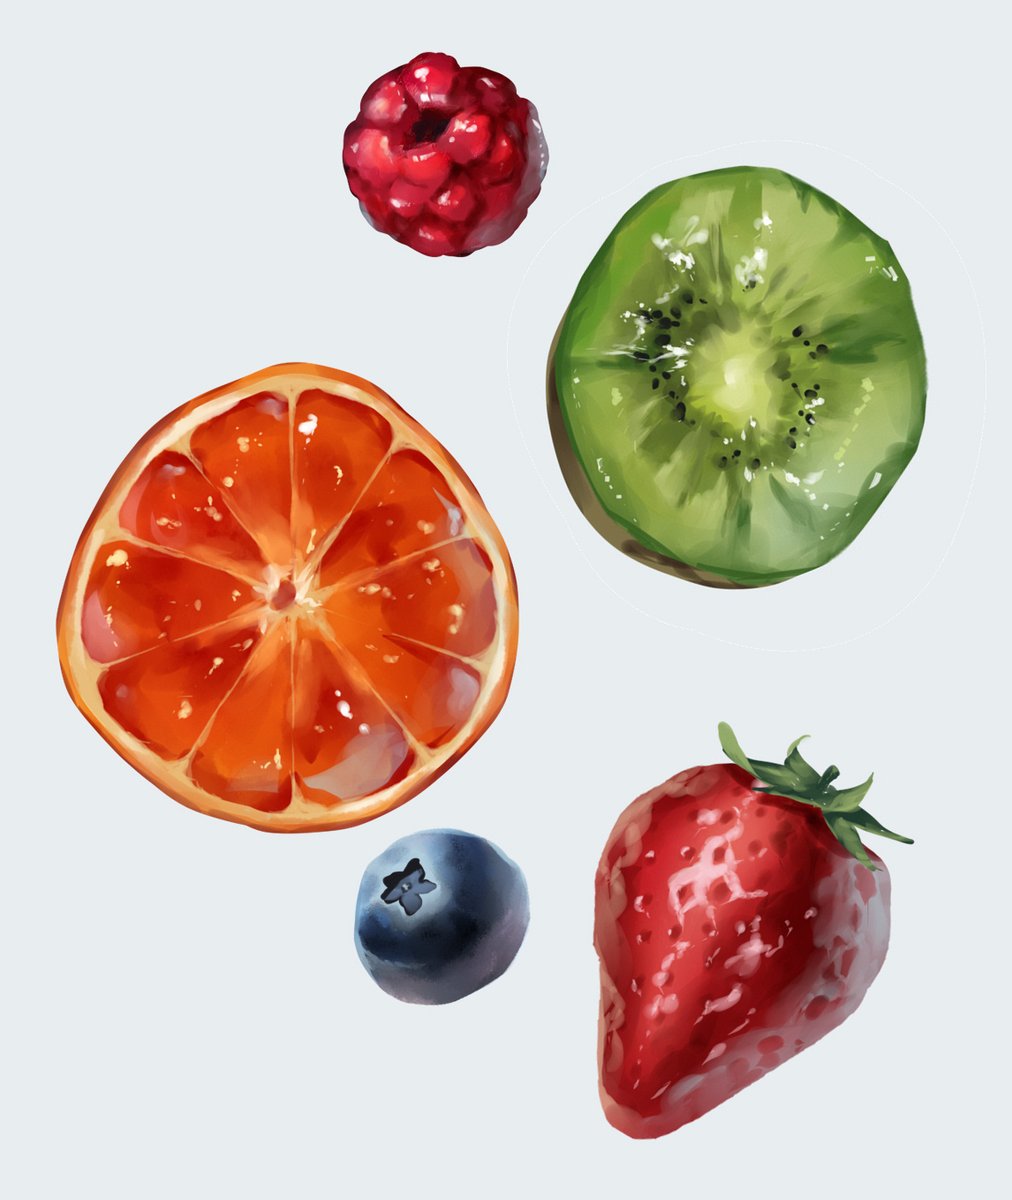 「今日描いた果物たちです」|小柚こゆき❄のイラスト